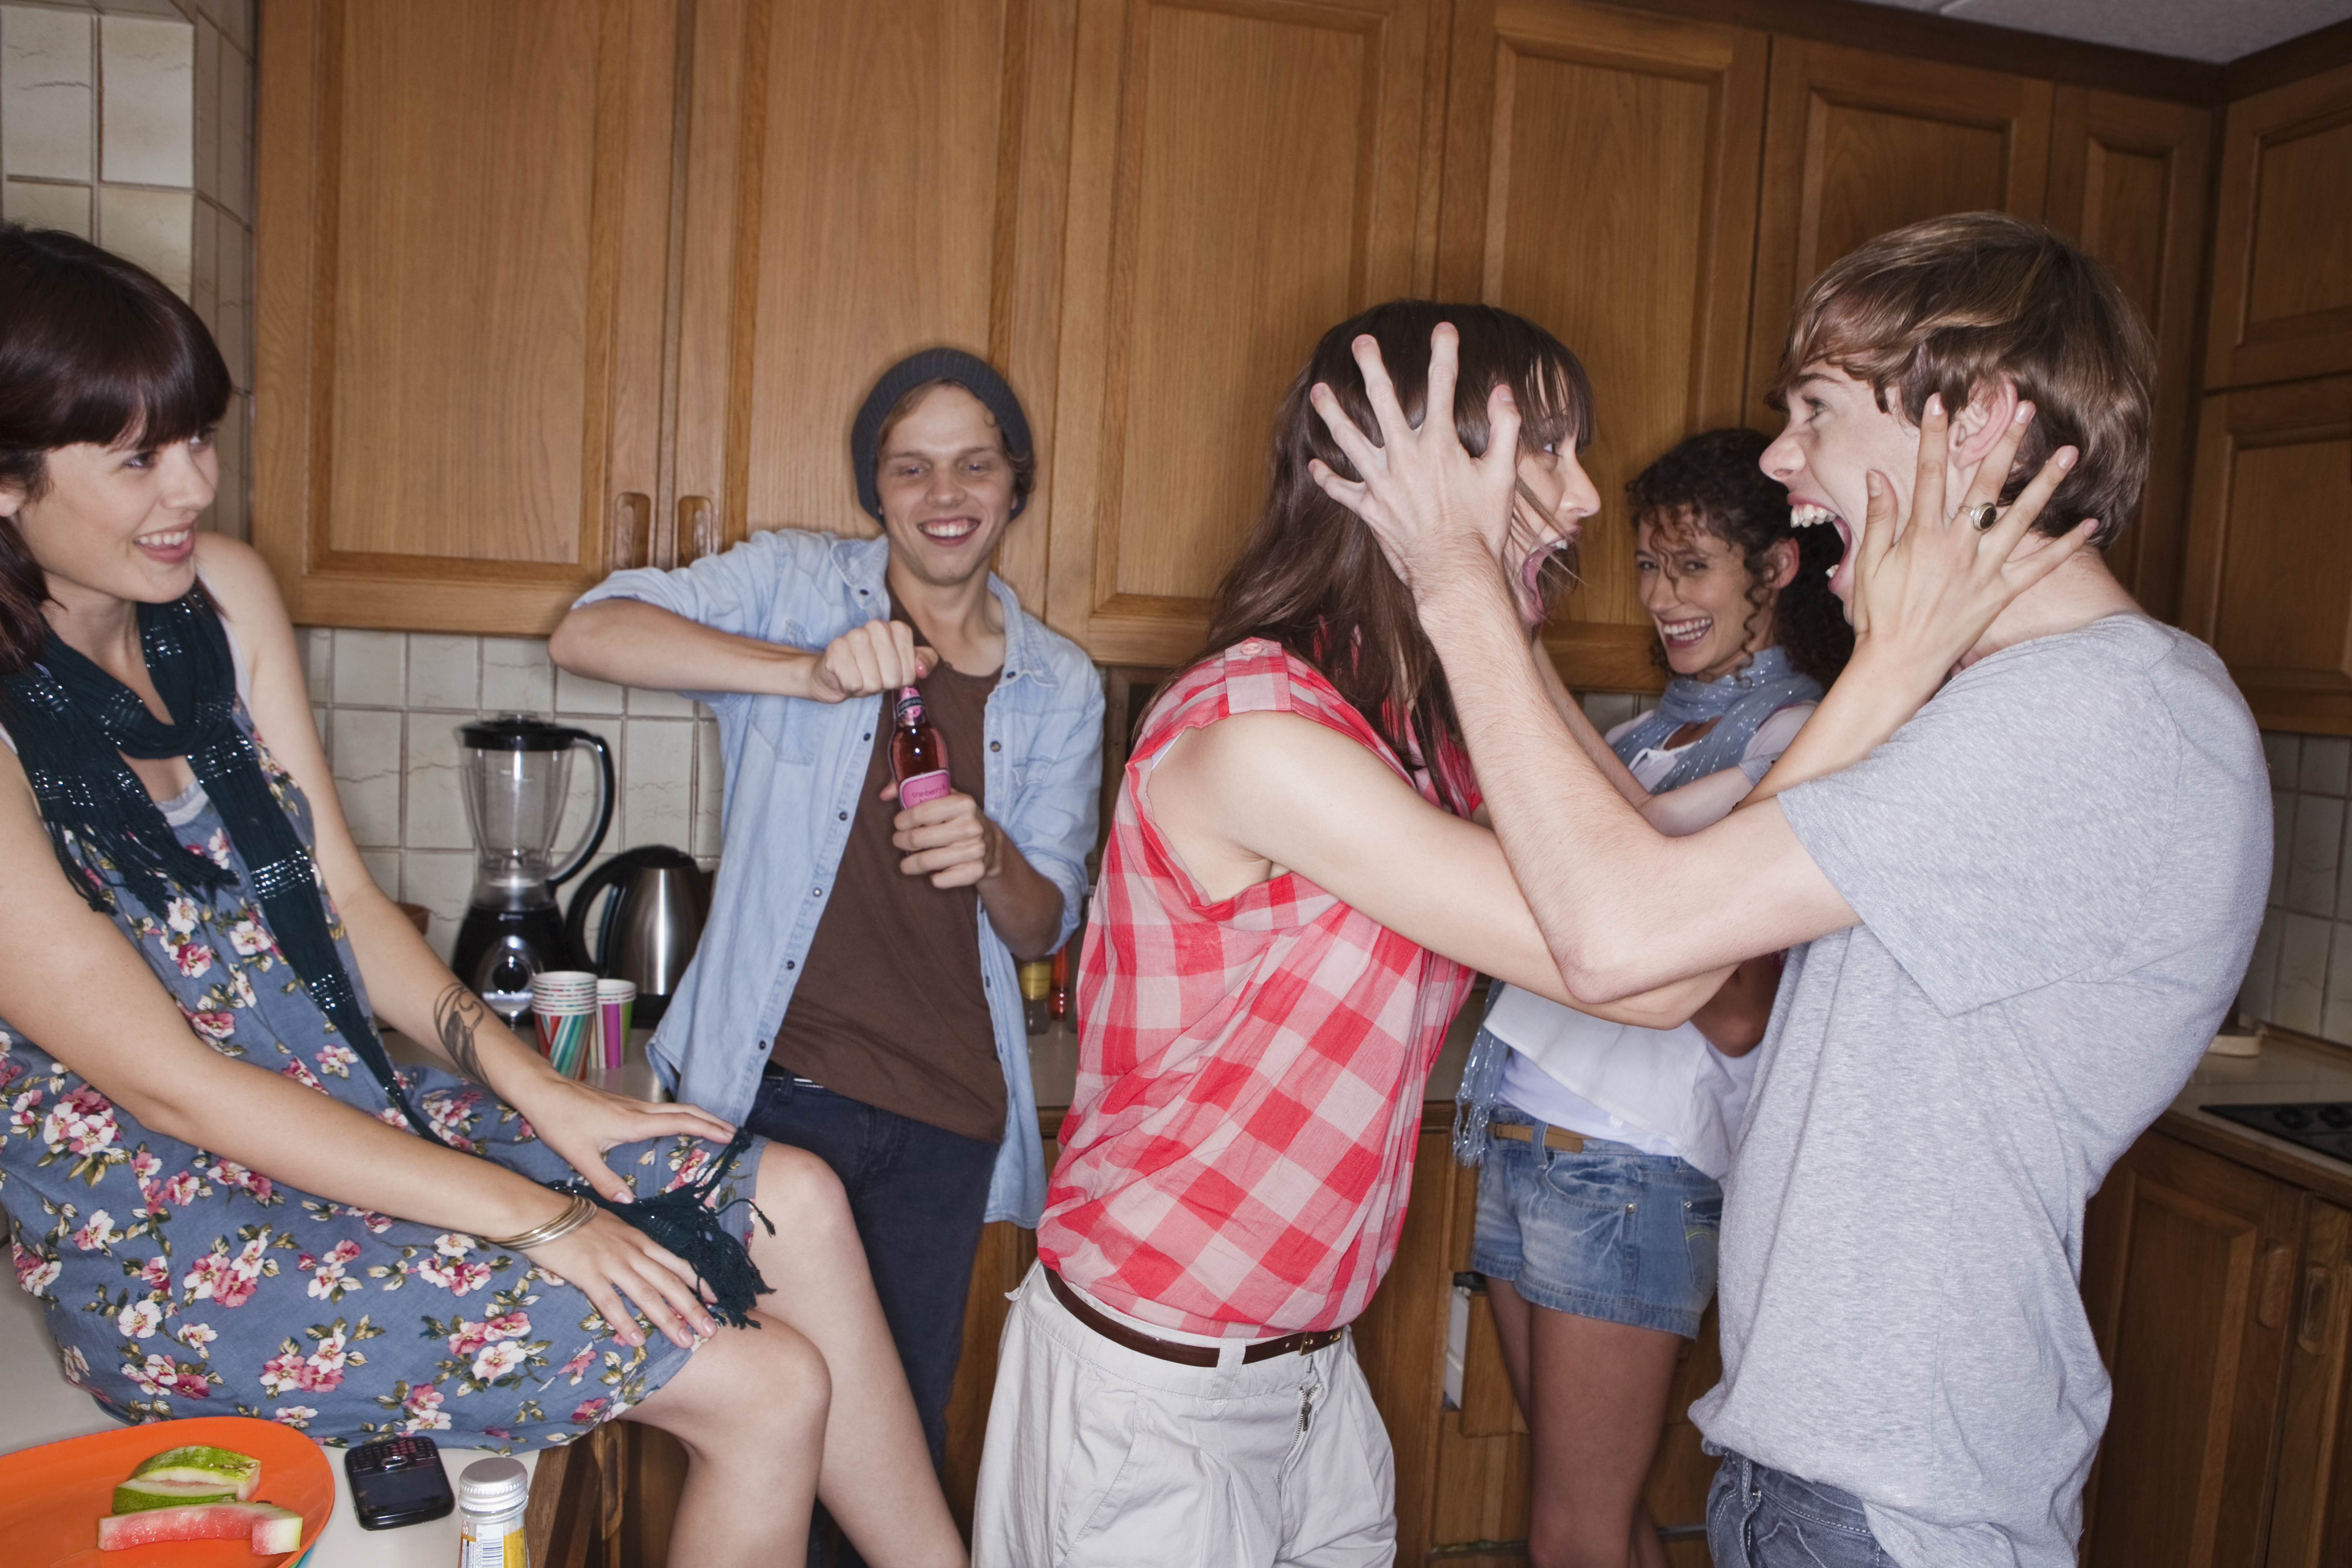 Teenager schreien in der Küche | Quelle: Getty Images